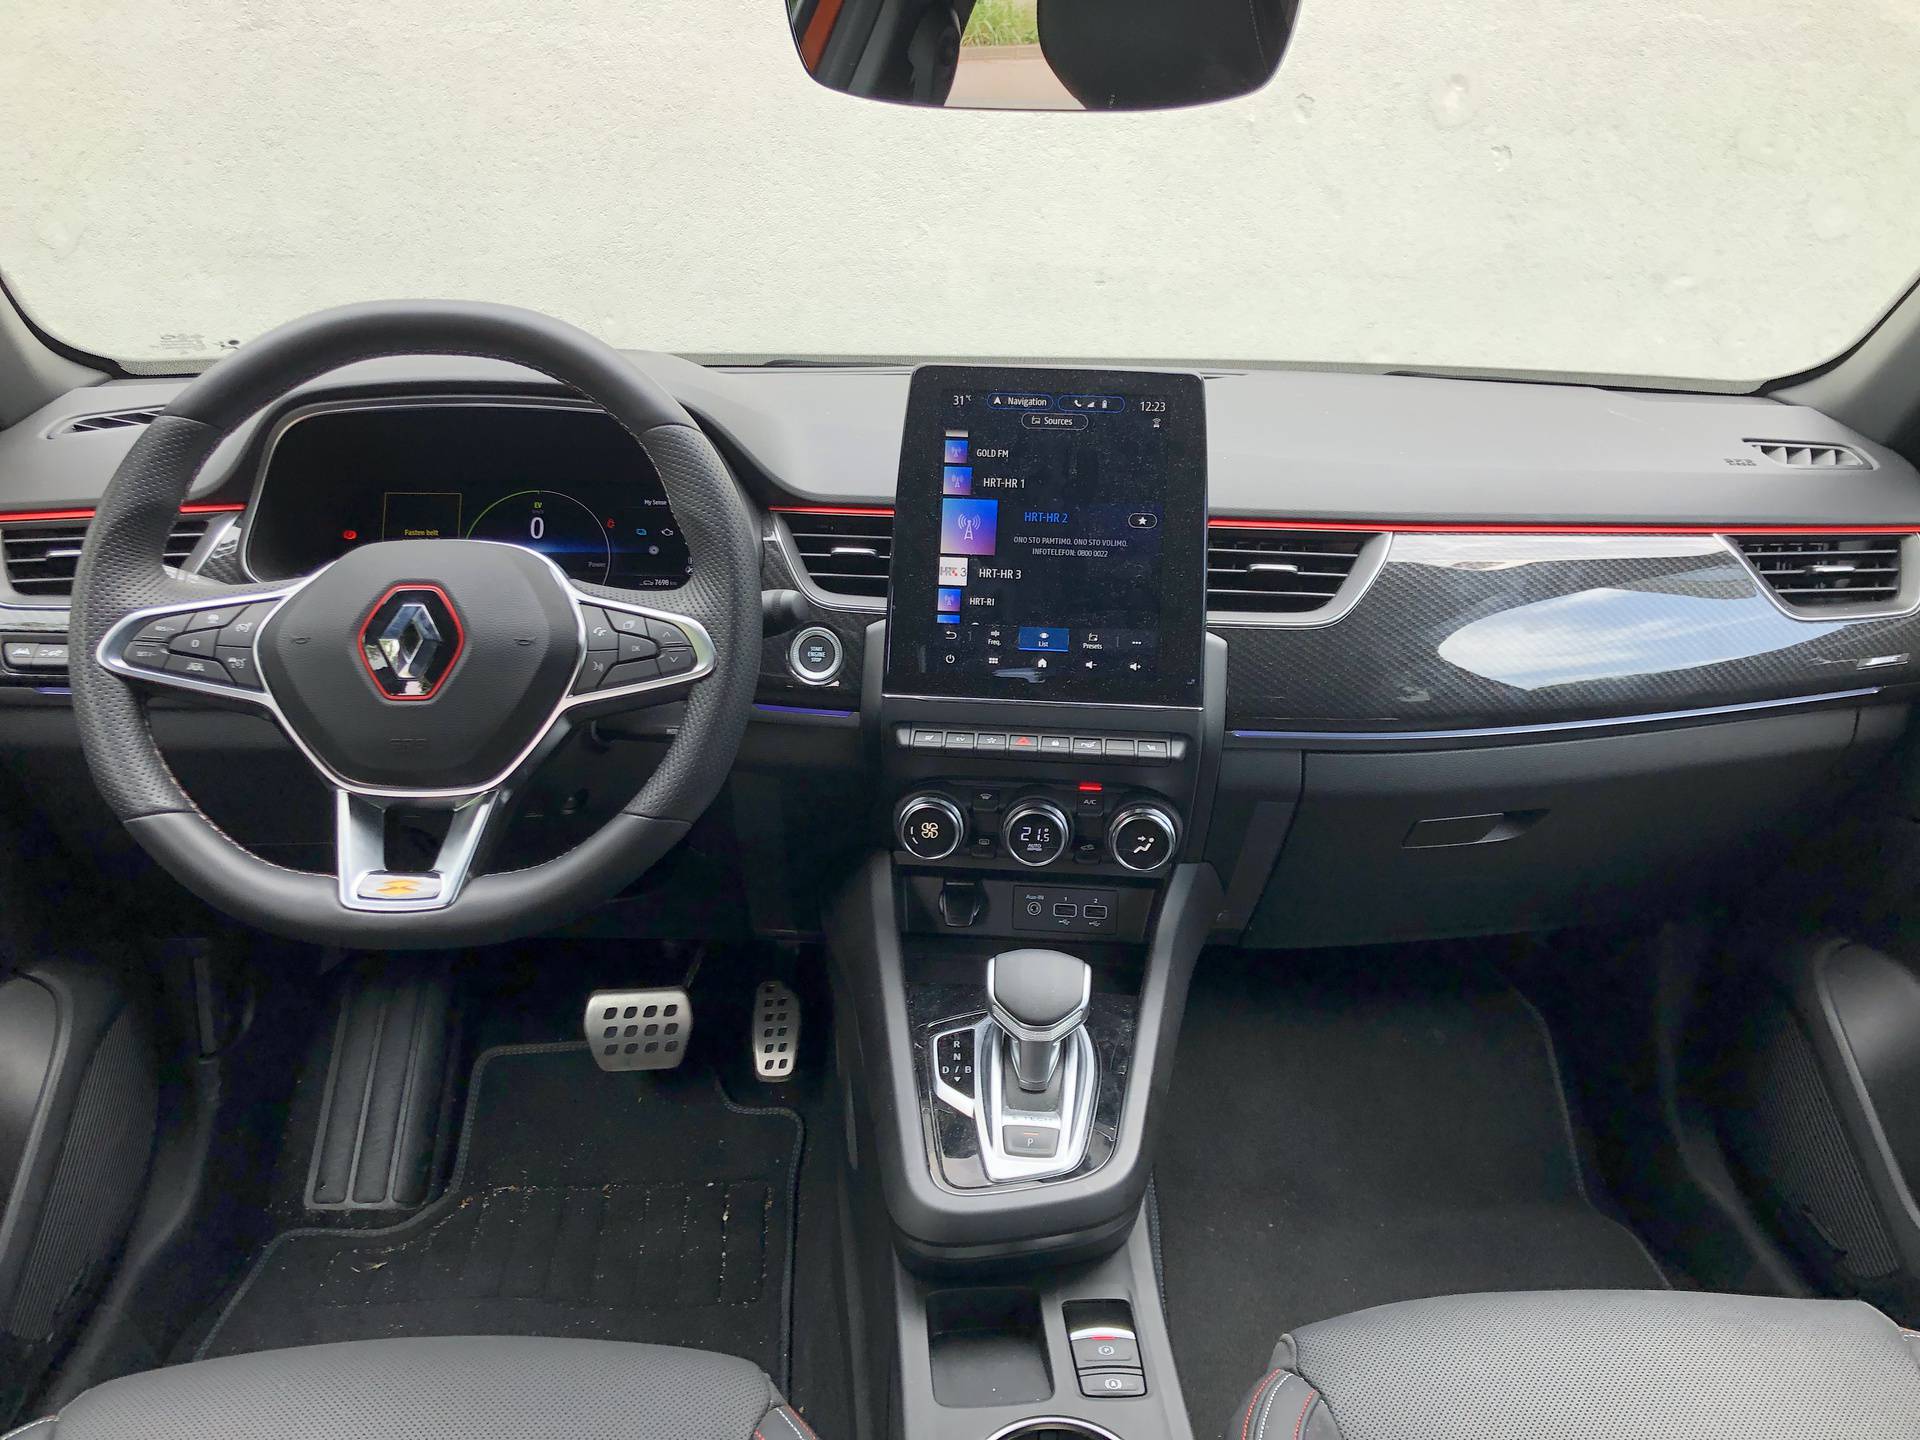 Testirali smo atraktivni Renault Megane Conquest: Nova SUV zvijezda na hrvatskom tržištu